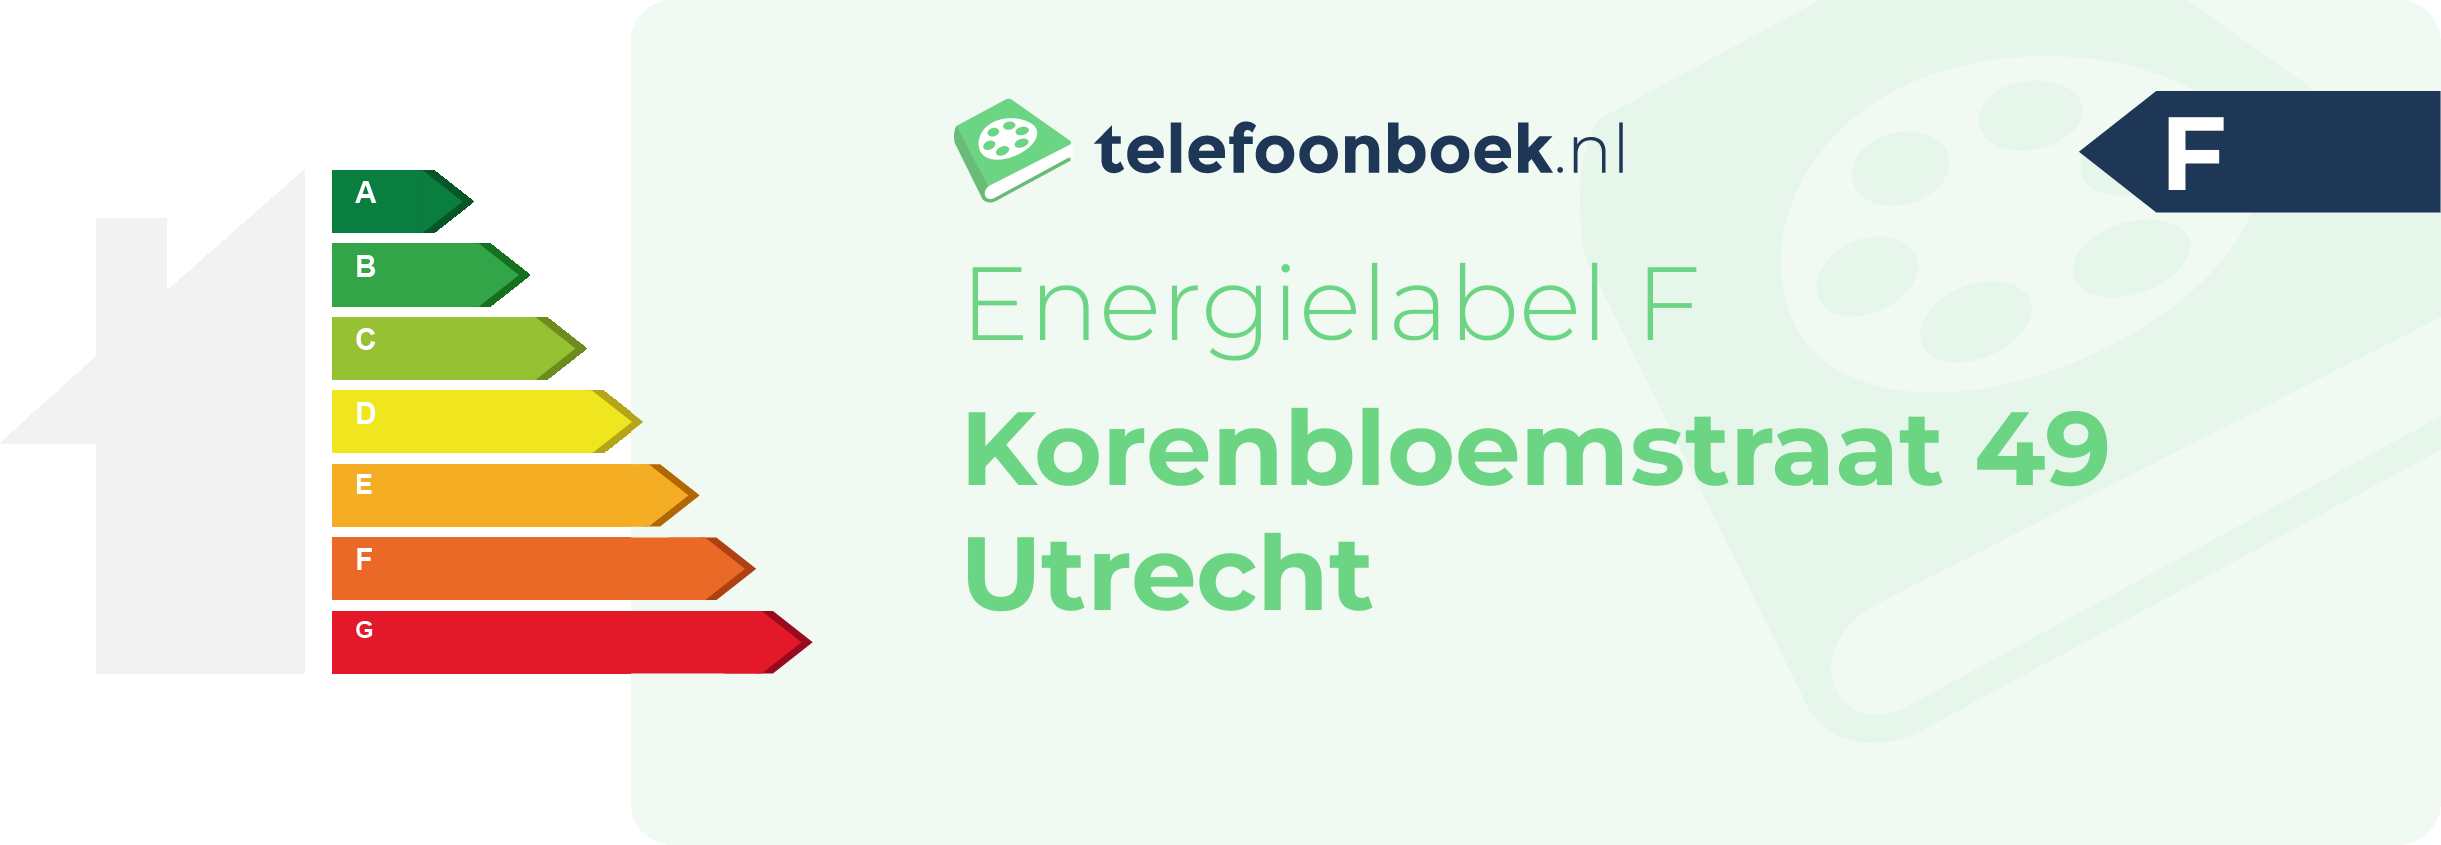 Energielabel Korenbloemstraat 49 Utrecht